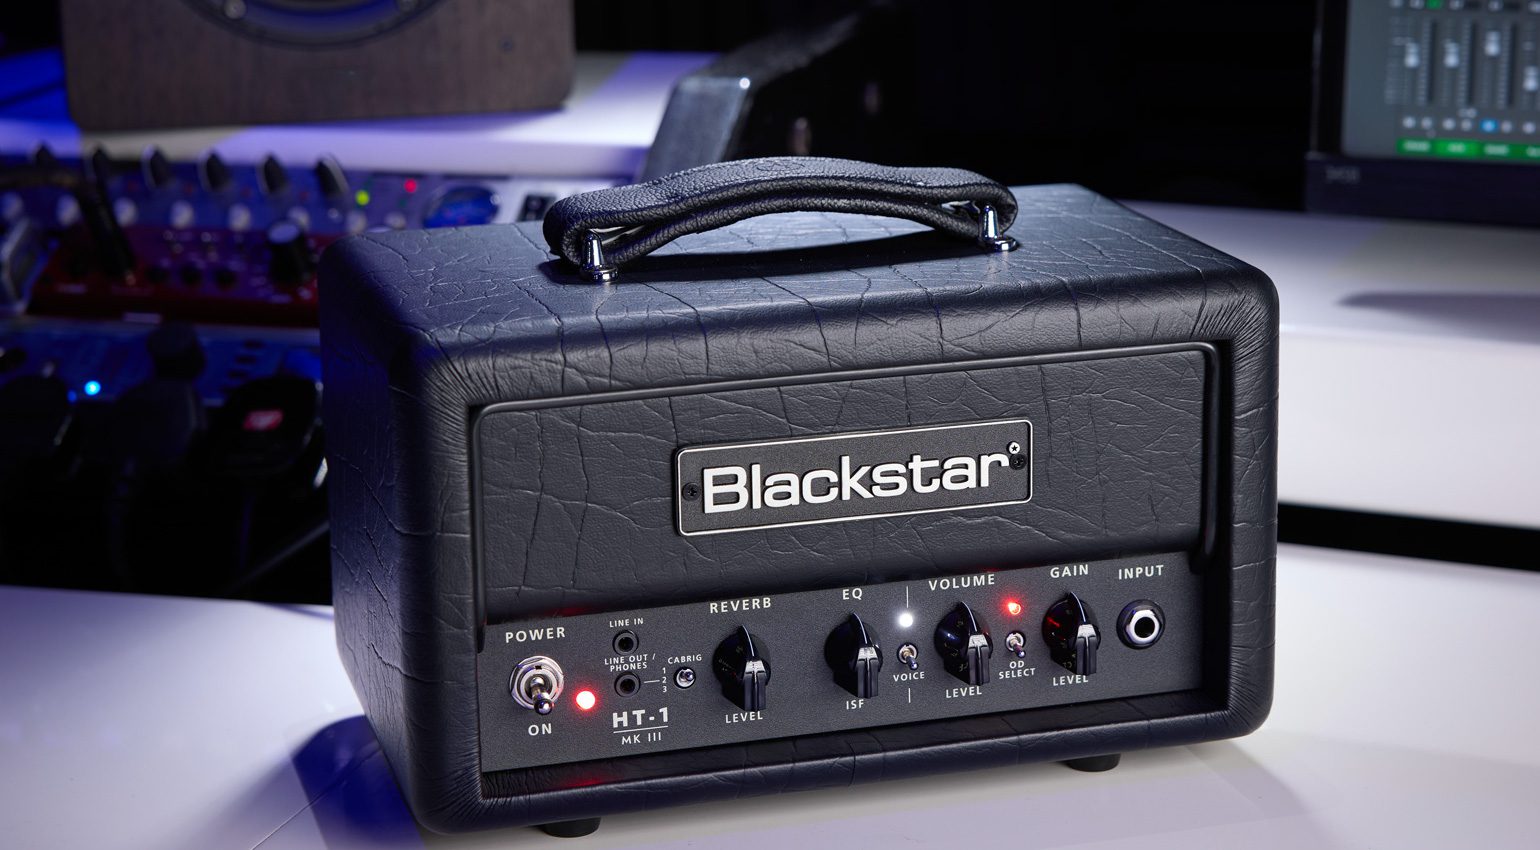 Die Blackstar HT MKIII Serie ist da und zeigt sich in neuem Gewand, mit bewährten und neuen Features. Erstklassige Boutique-Clean-Sounds und modernen High-Gain-Overdrives ohne Kompromisse. Das wollen wir uns genauer anschauen.